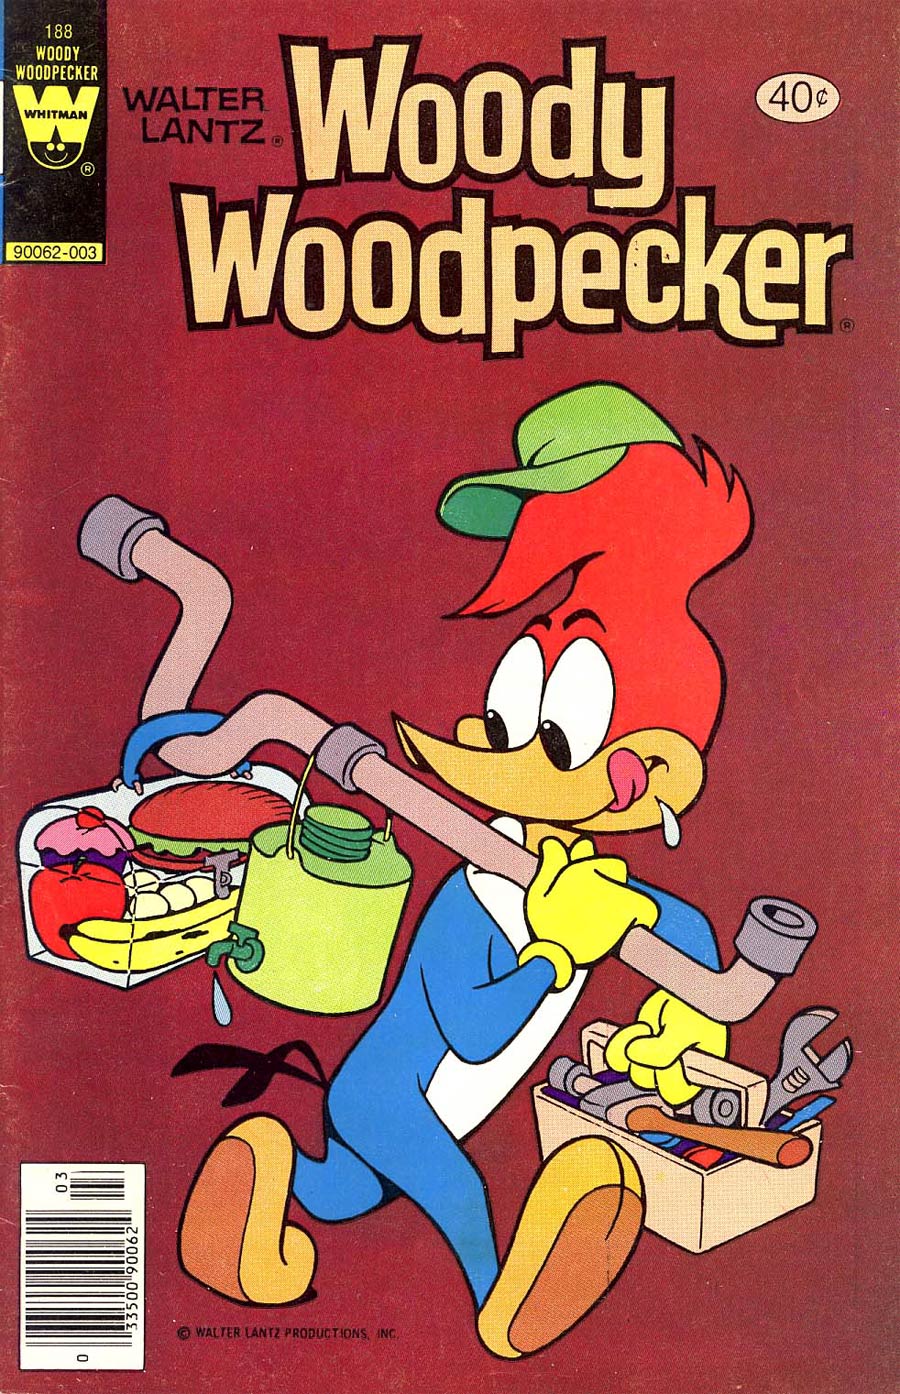 Woody Woodpecker #188